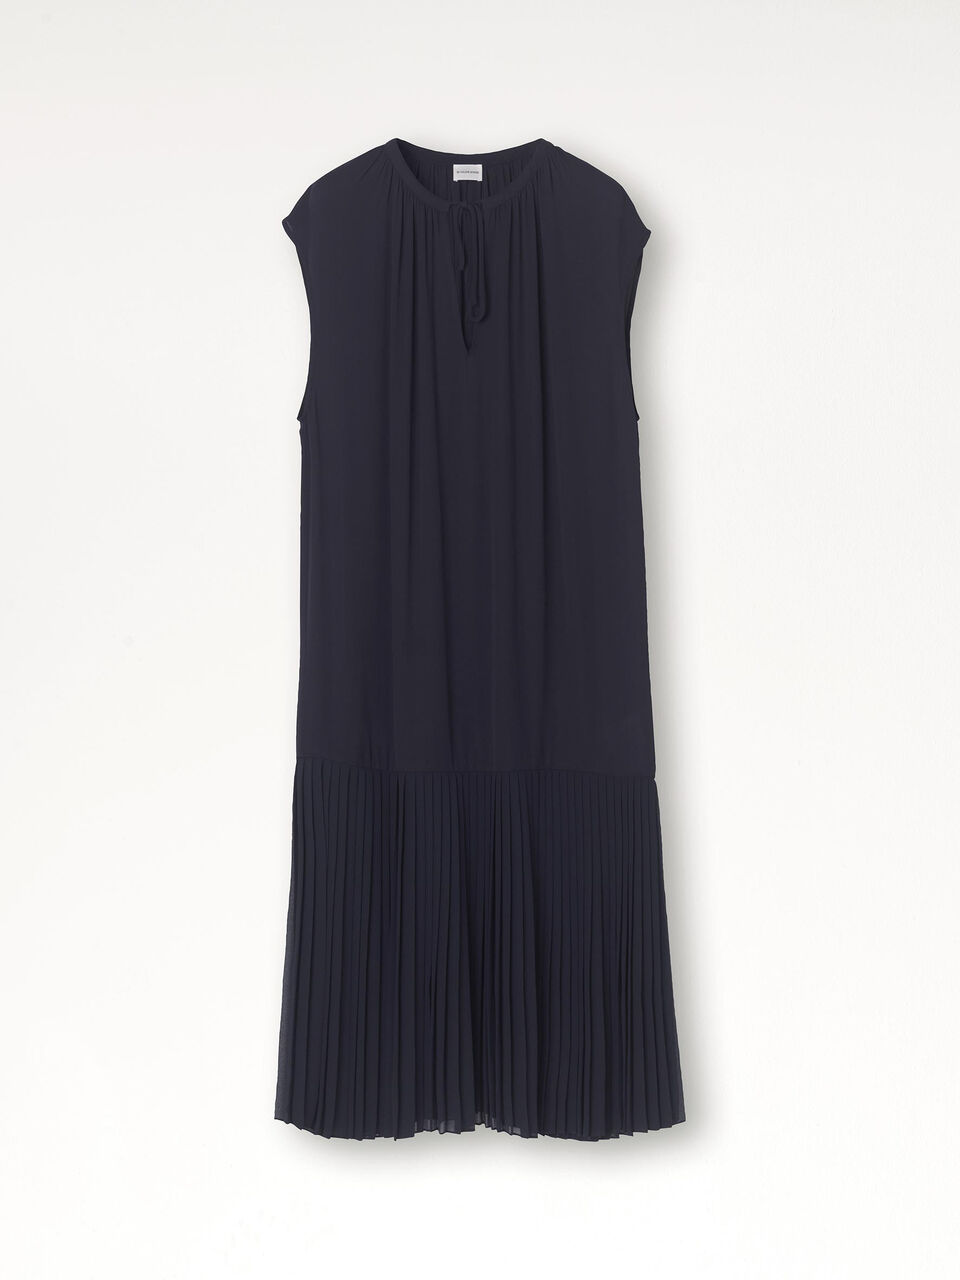 Solomon dress - Buy Dresses online